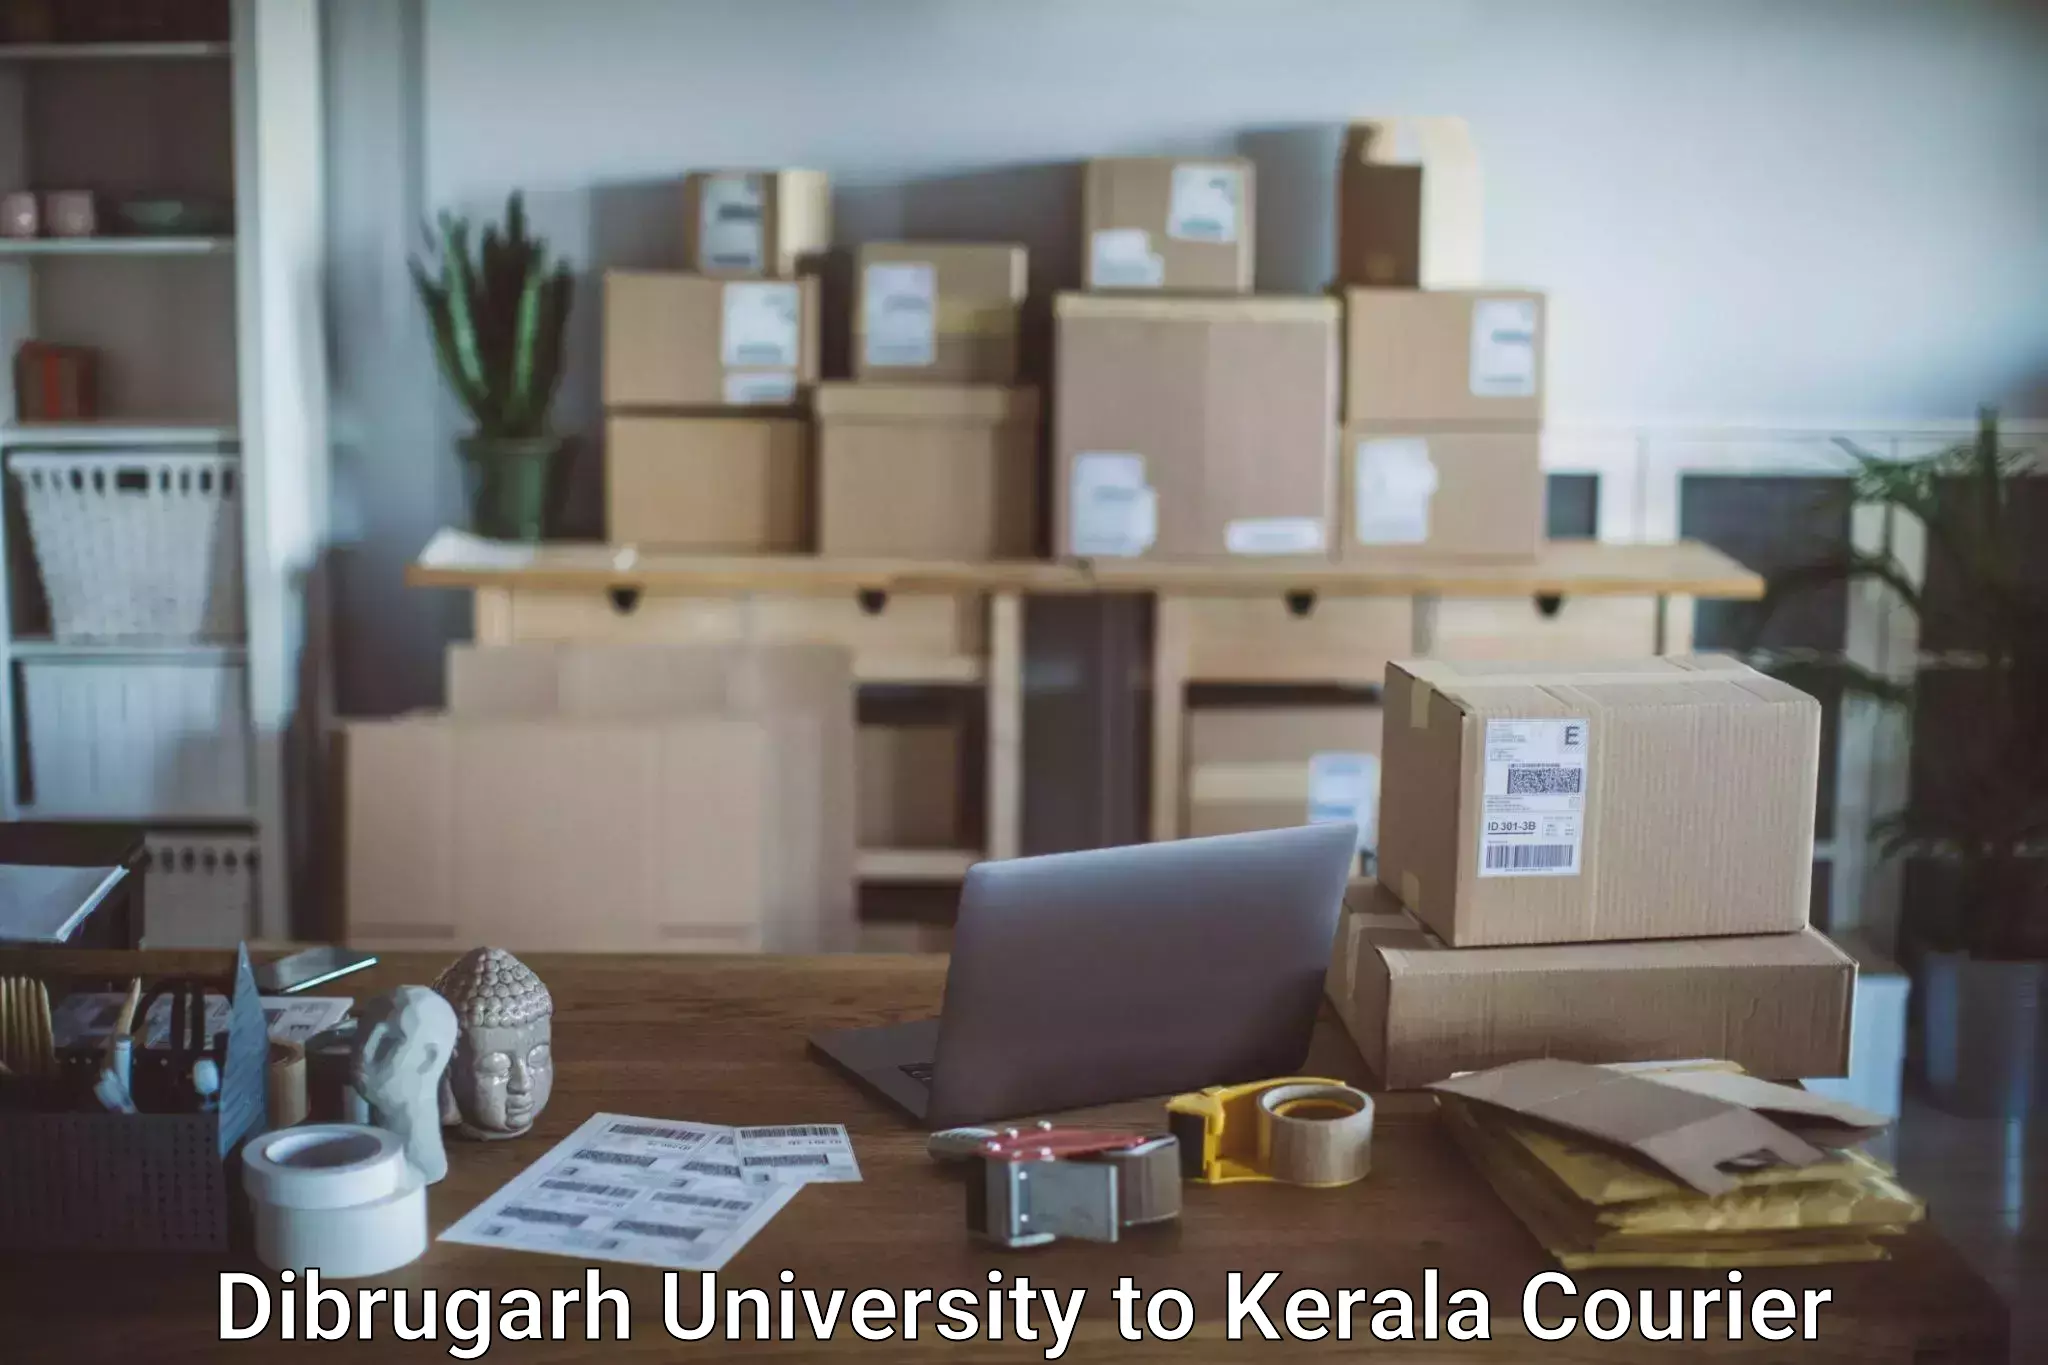 Baggage shipping service Dibrugarh University to Kuthiathode